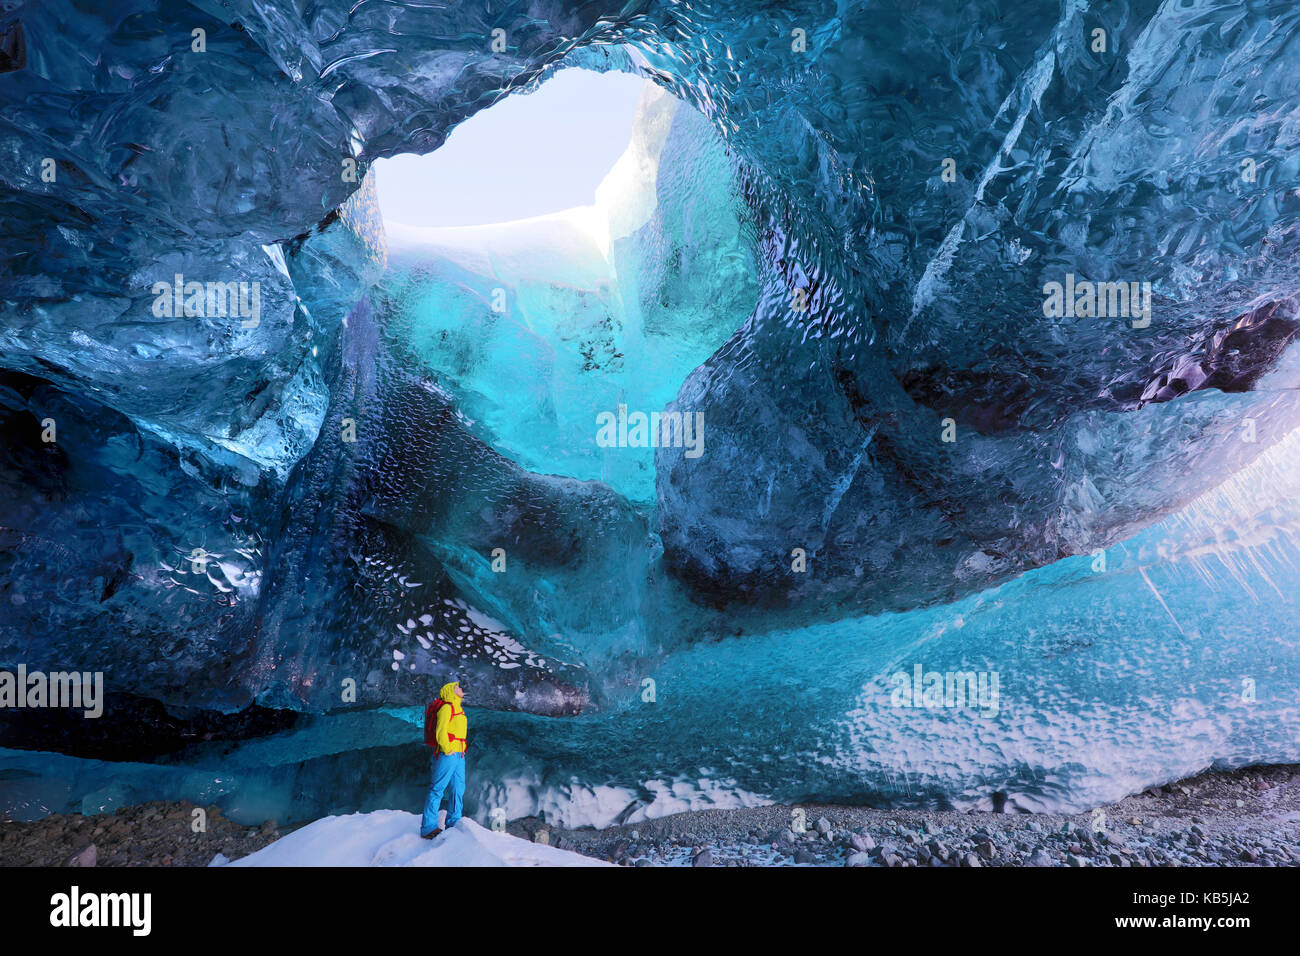 All'interno della caverna di ghiaccio sotto il ghiacciaio Vatnajokull, con grotta cercando di guida fino al foro nella grotta del tetto, vicino a jokulsarlon, sud Islanda Foto Stock